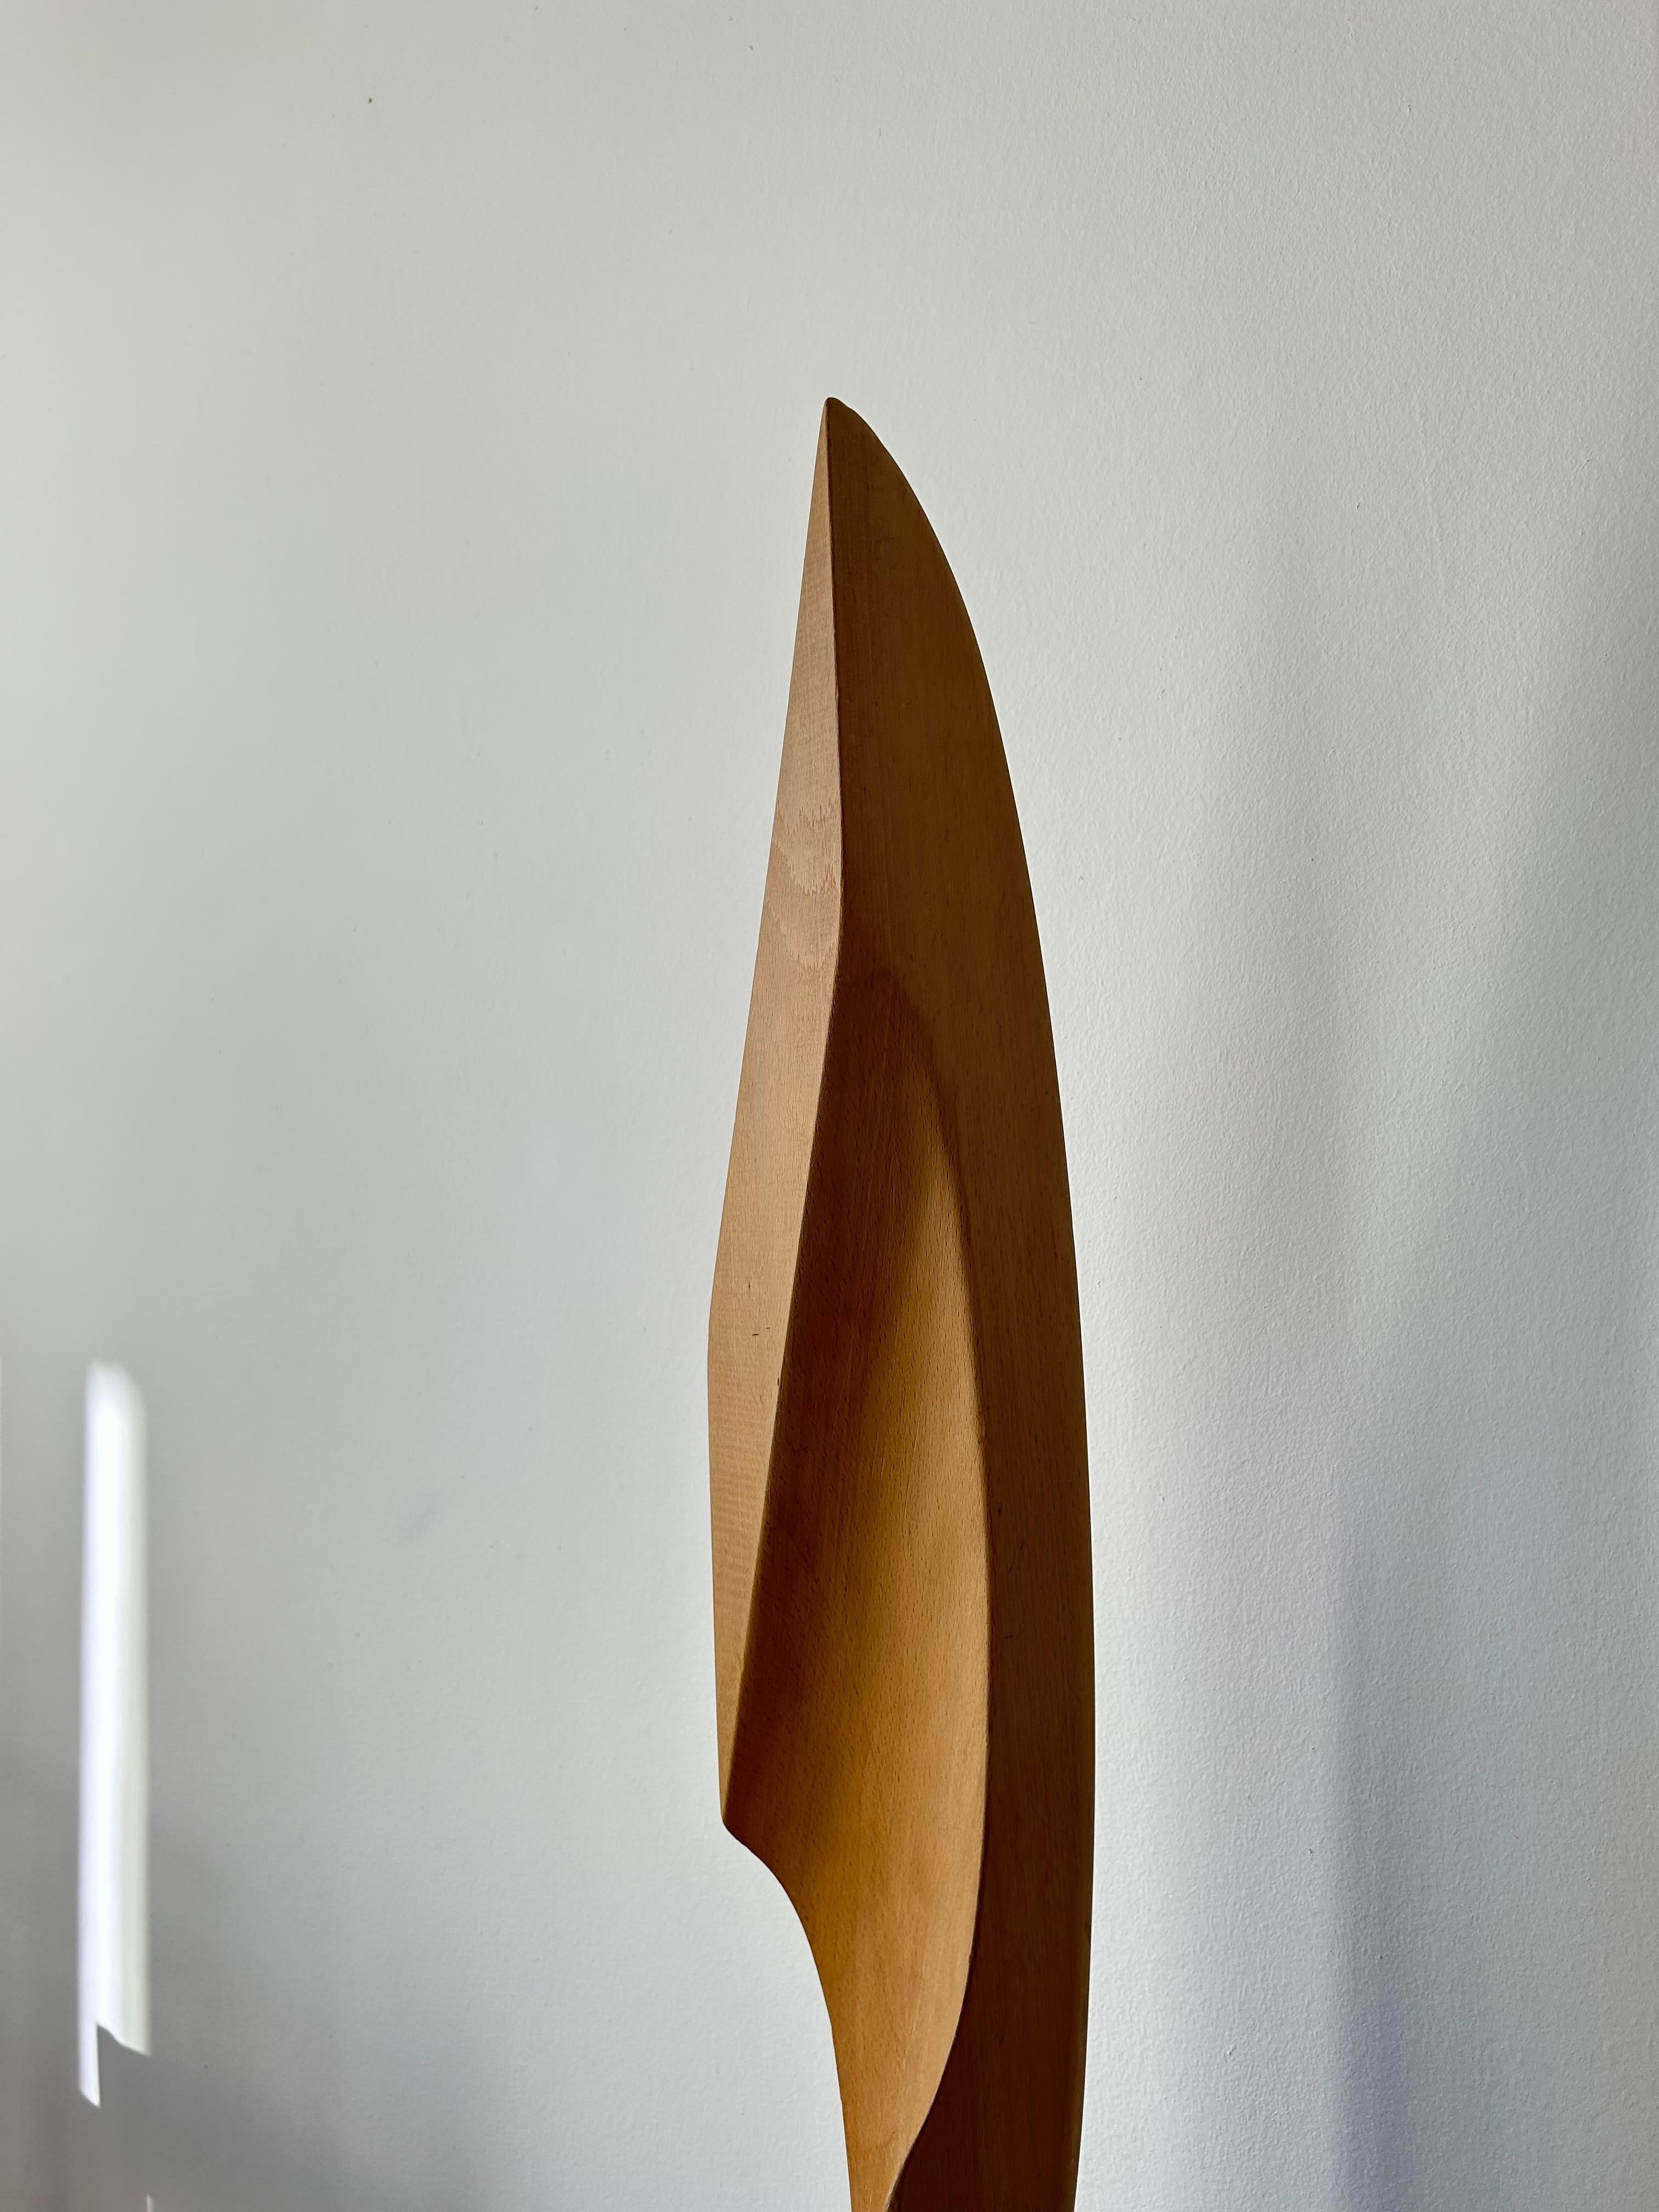 Seltene abstrakte skandinavische Holzskulptur aus massivem Teak- und Buchenholz, hergestellt von einem unbekannten skandinavischen Künstler in den 1960er Jahren.

Die Skulptur ist das perfekte Dekorationsstück für jedes Interieur und passt perfekt